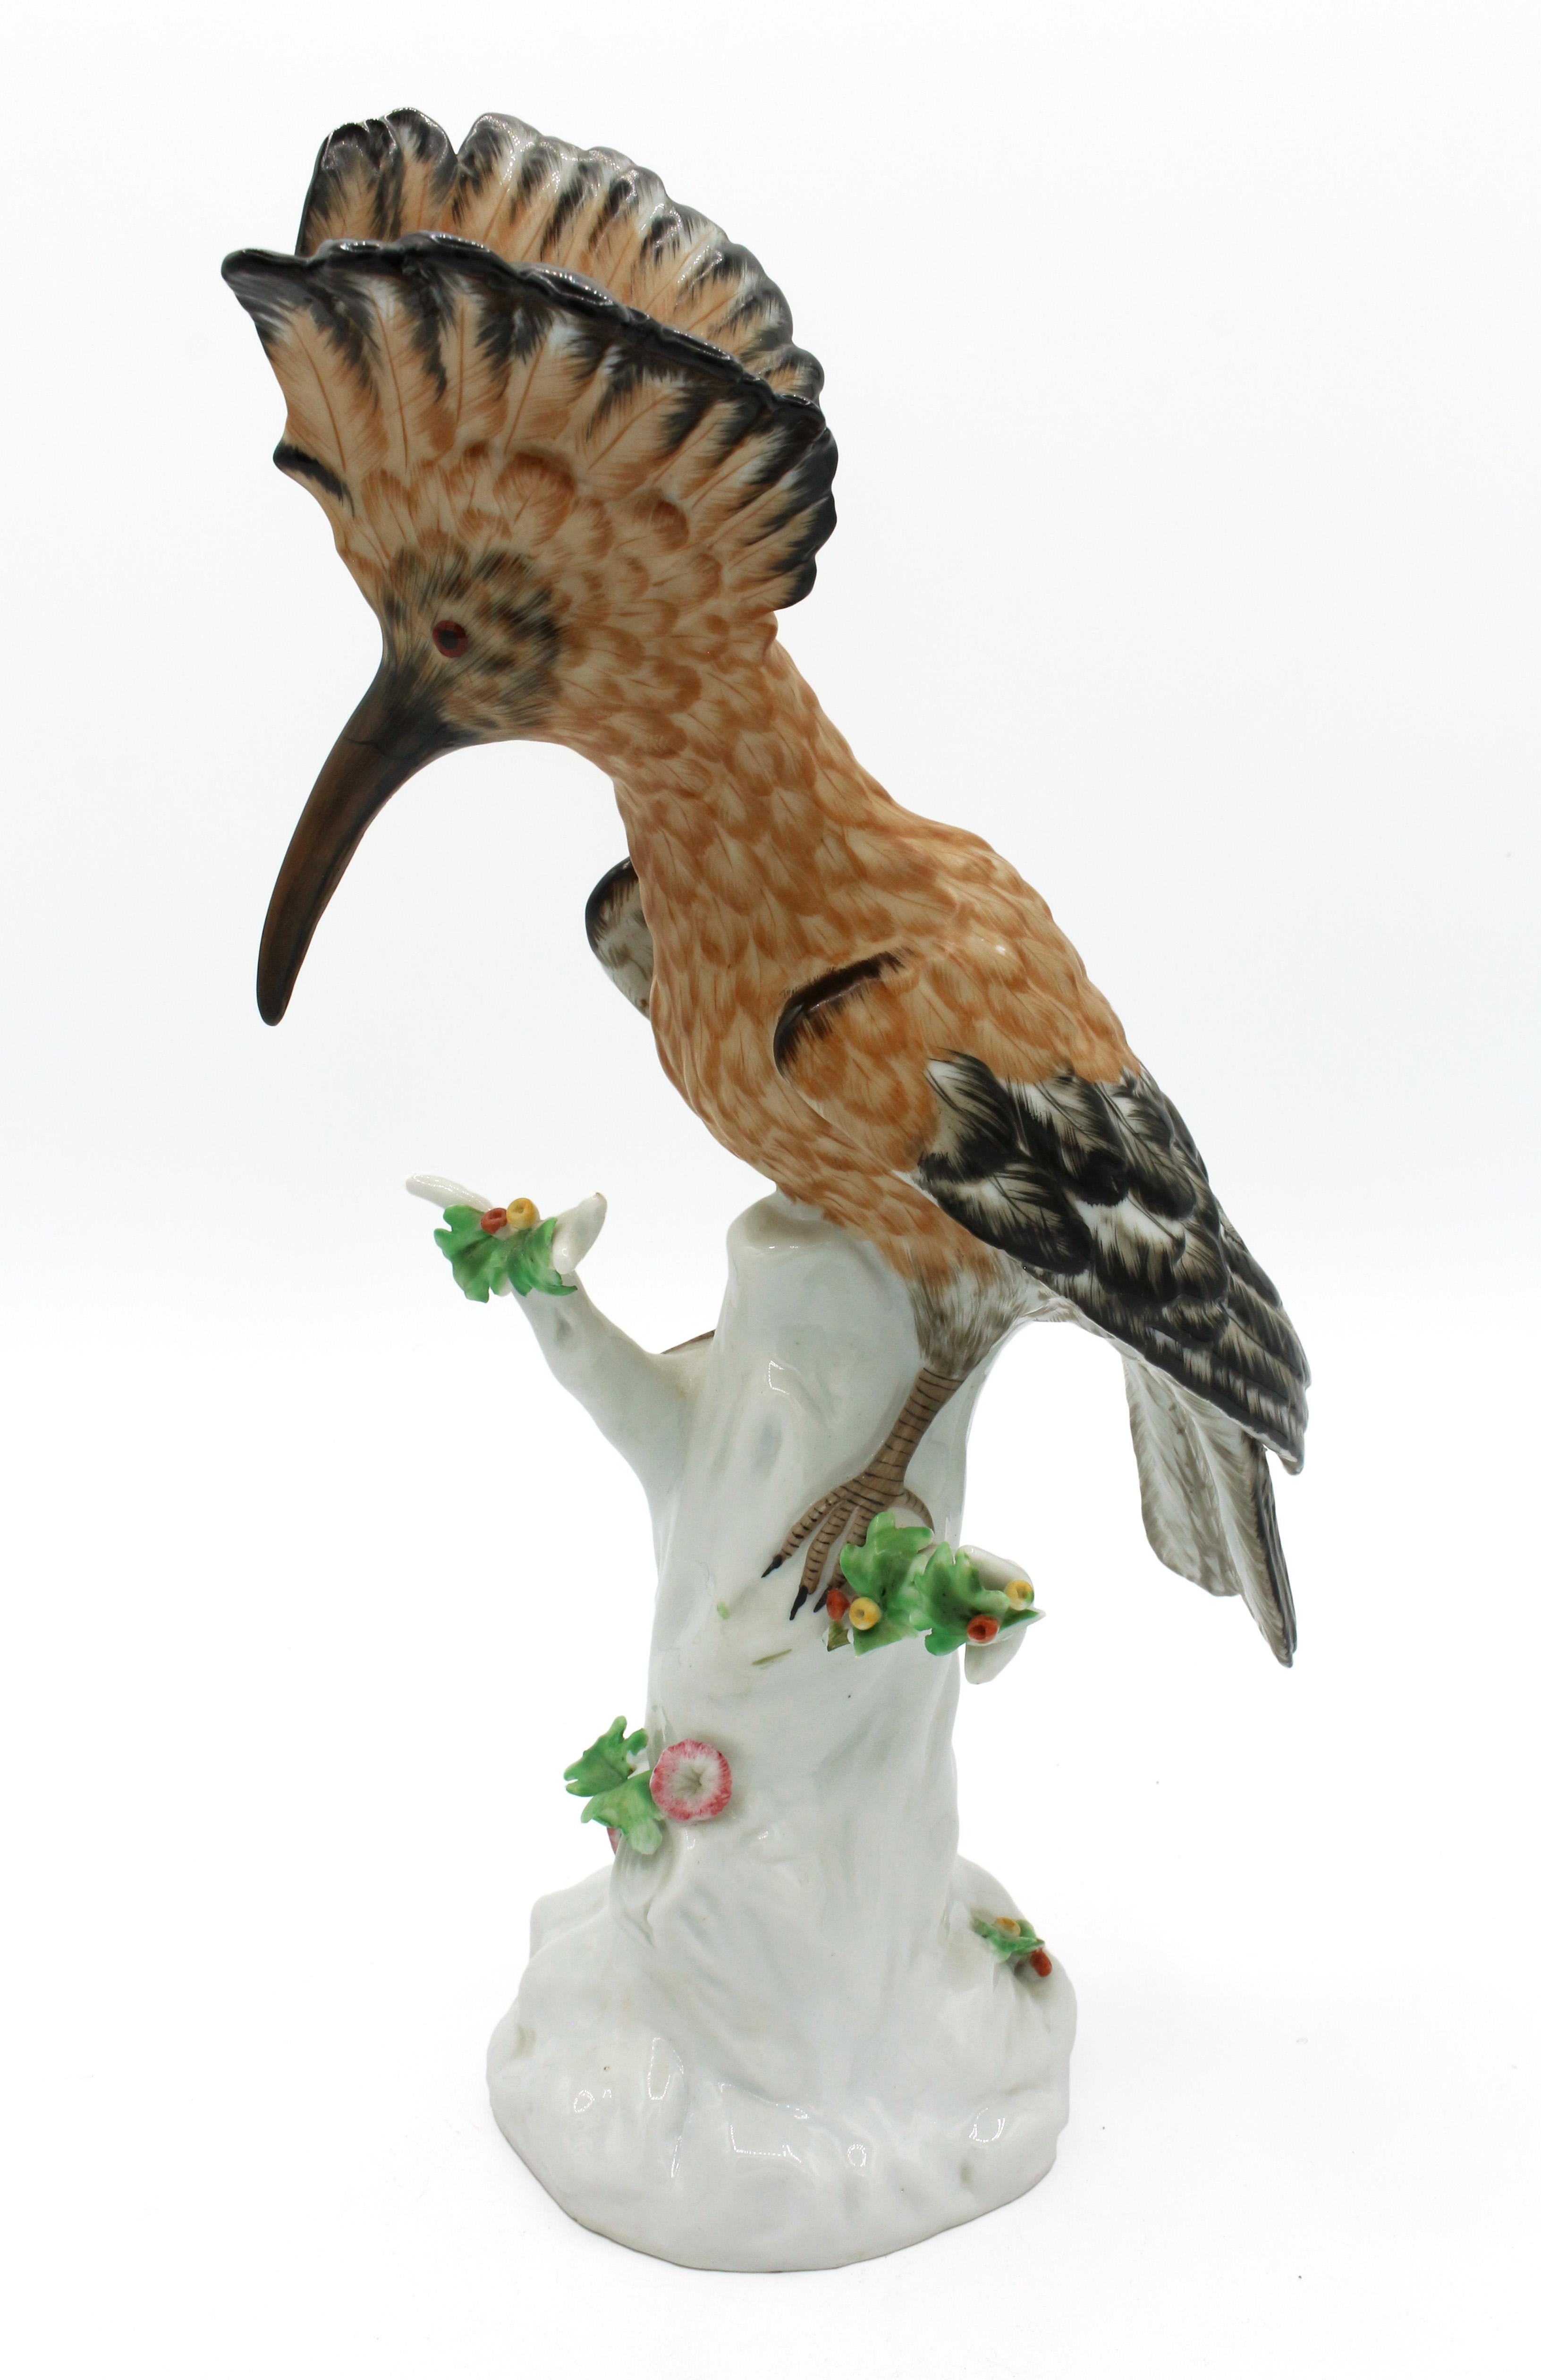 Figurine d'oiseau en porcelaine italienne du milieu du 20e siècle. Marqué 